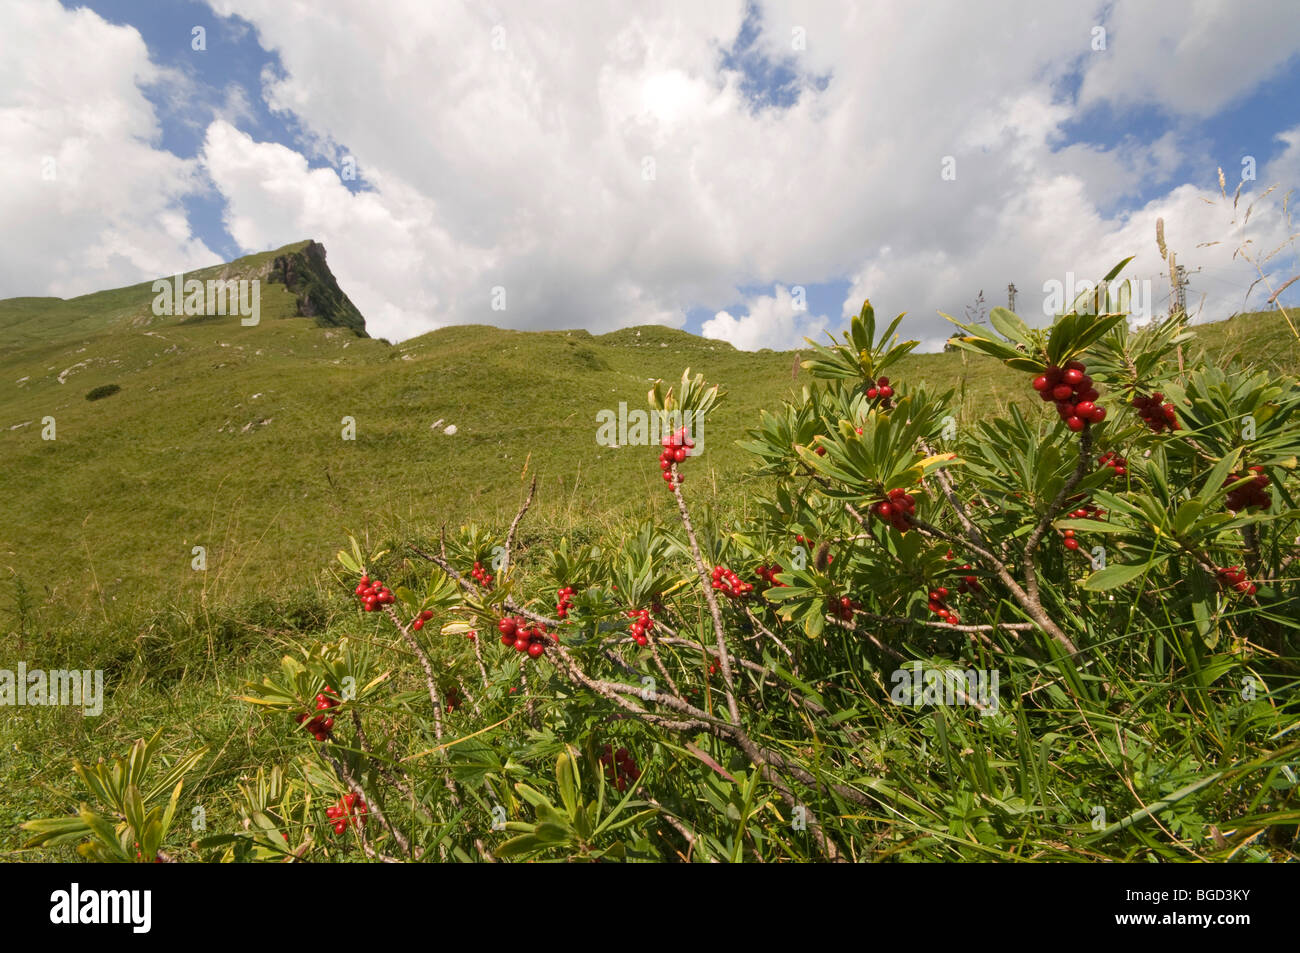 Mezereon (Daphne mezereum), in the back Mt. Rote Spitze, Naturschutzgebiet Vilsalpsee Nature Reserve, Allgaeu Alps, Tyrol, Aust Stock Photo